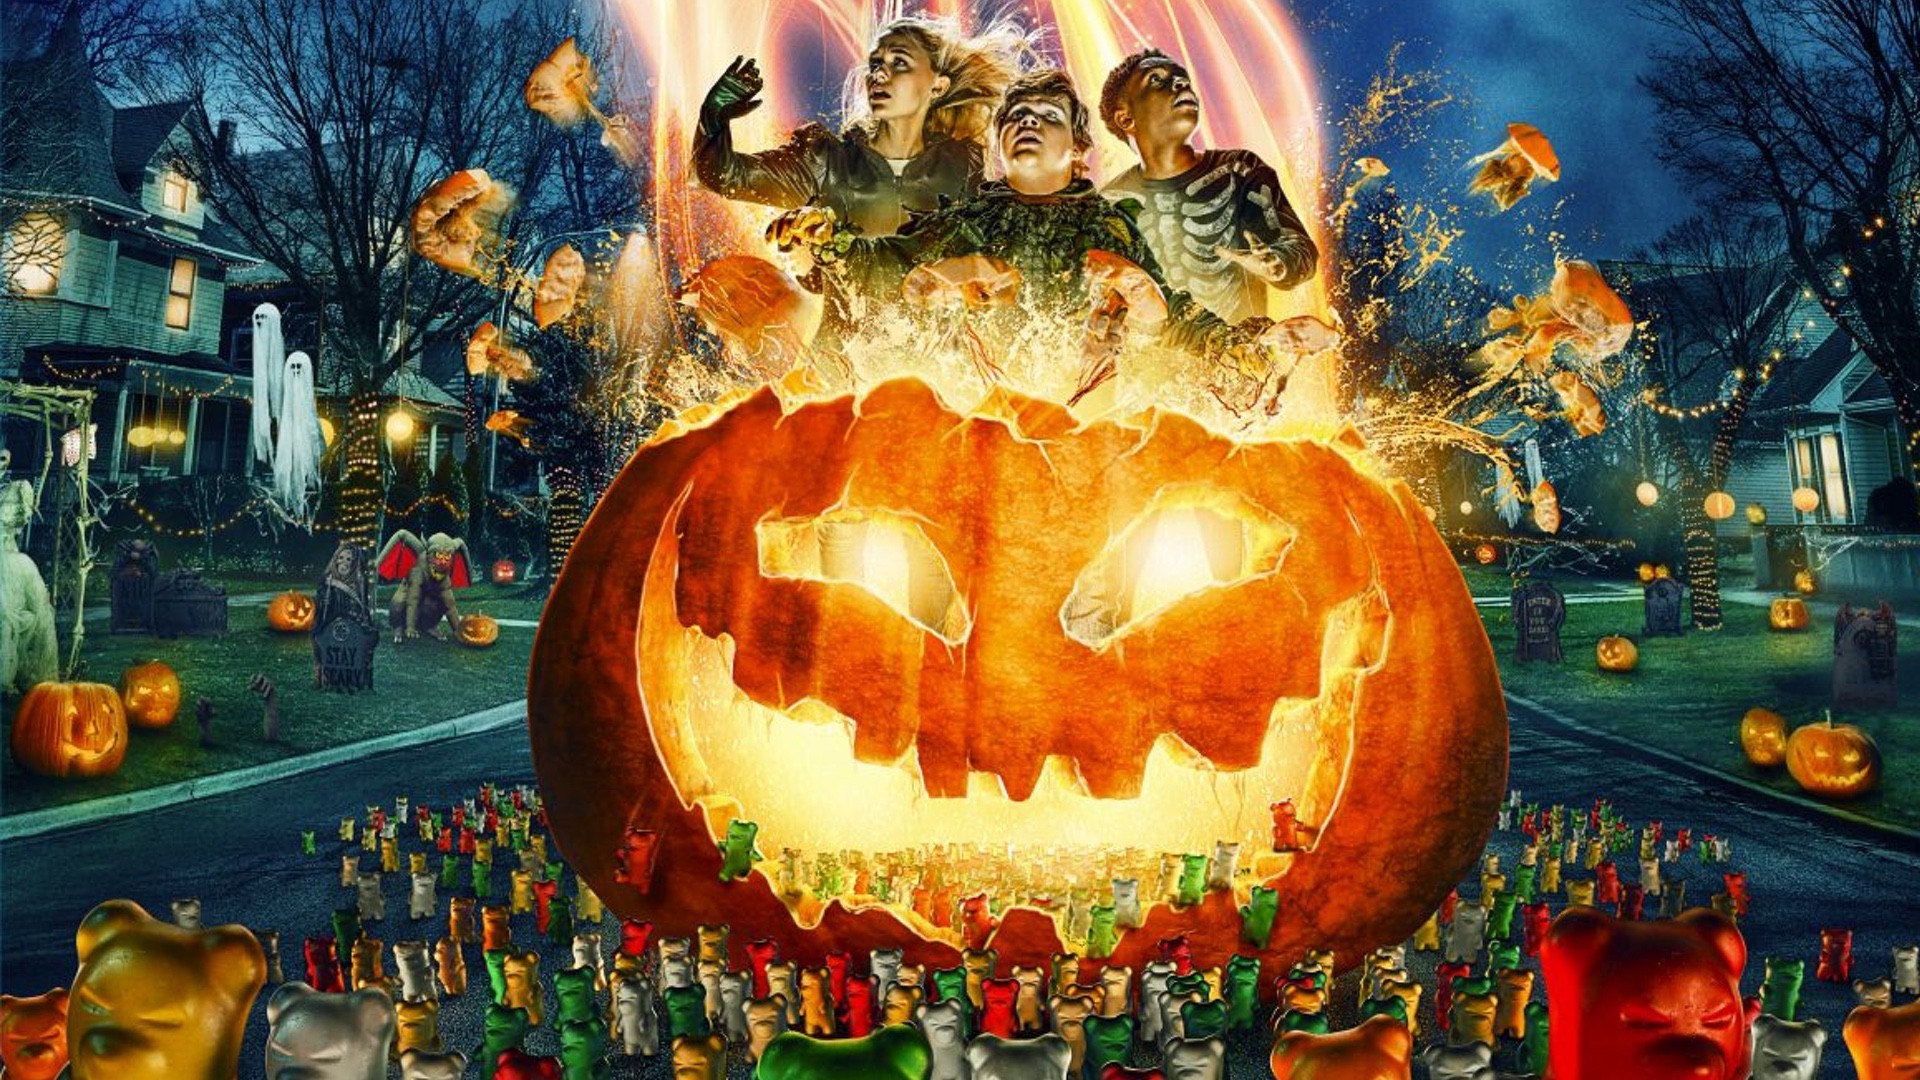 Metrópole promove festa de Halloween com tema de 'Era das Bruxas